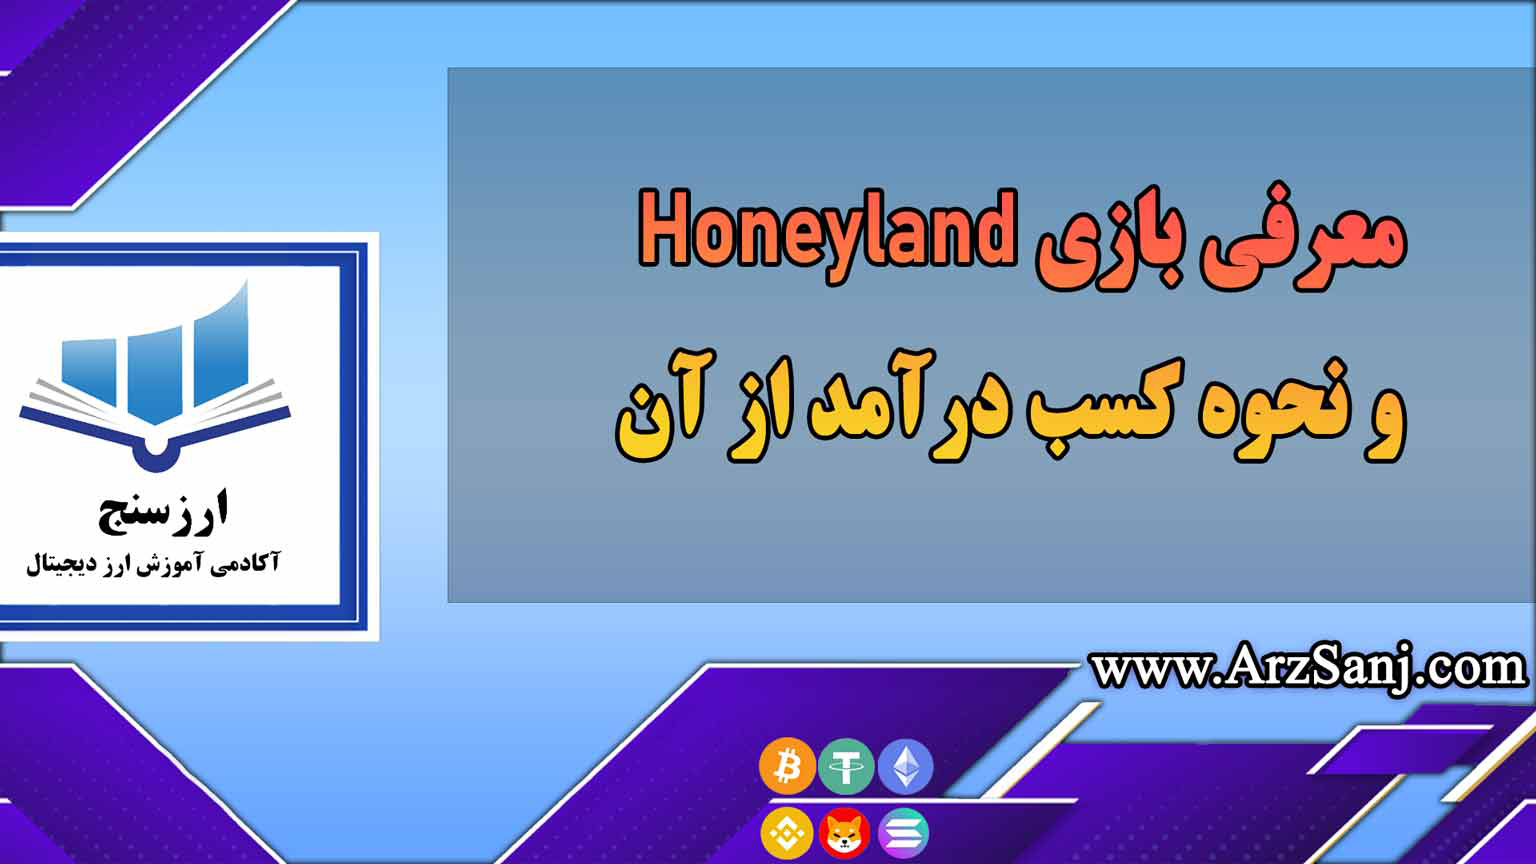 معرفی بازی Honeyland و نحوه کسب درآمد از آن